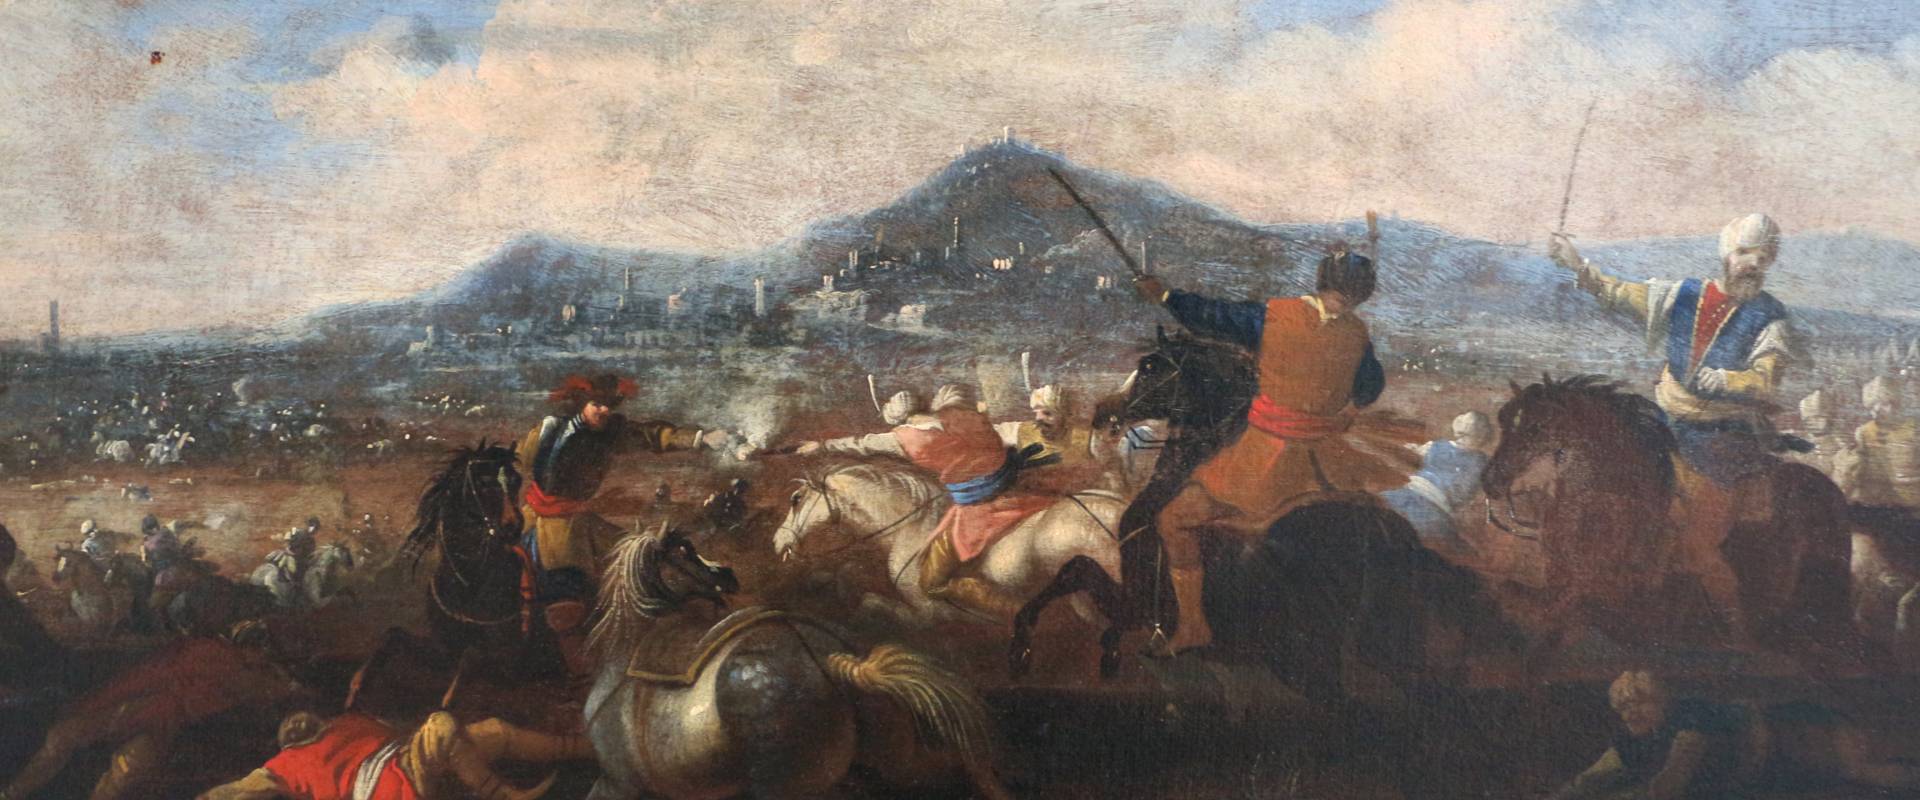 Ignoto, battaglia tra cavalieri turchi e cristiani, 1650-1700 ca. 02 foto di Sailko